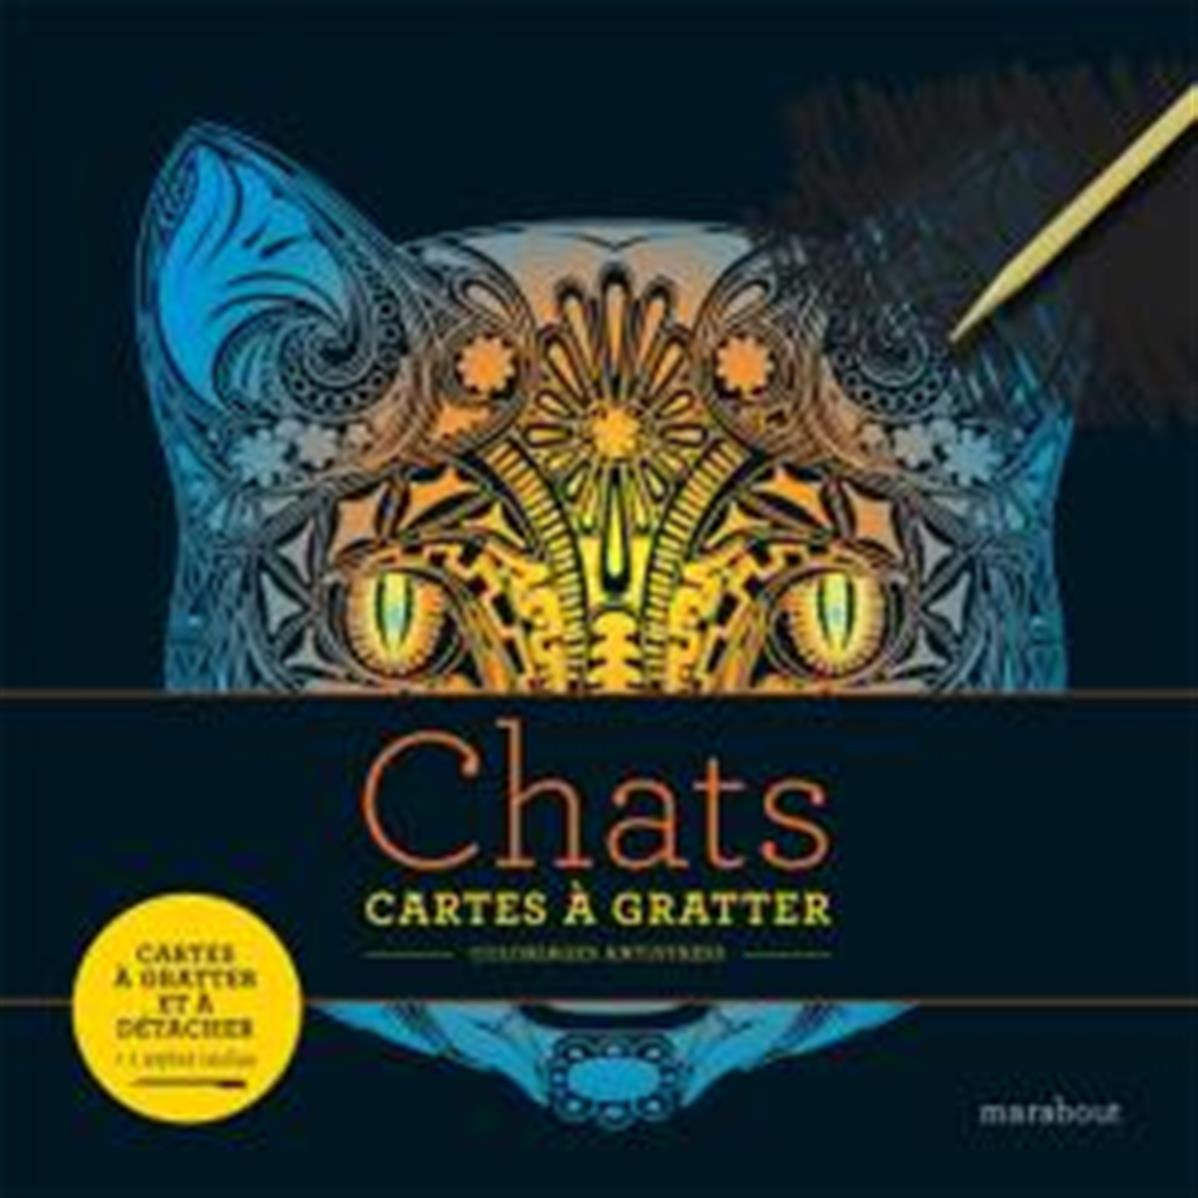 Cartes à gratter antistress chats Edition - Marabout - La Ruche